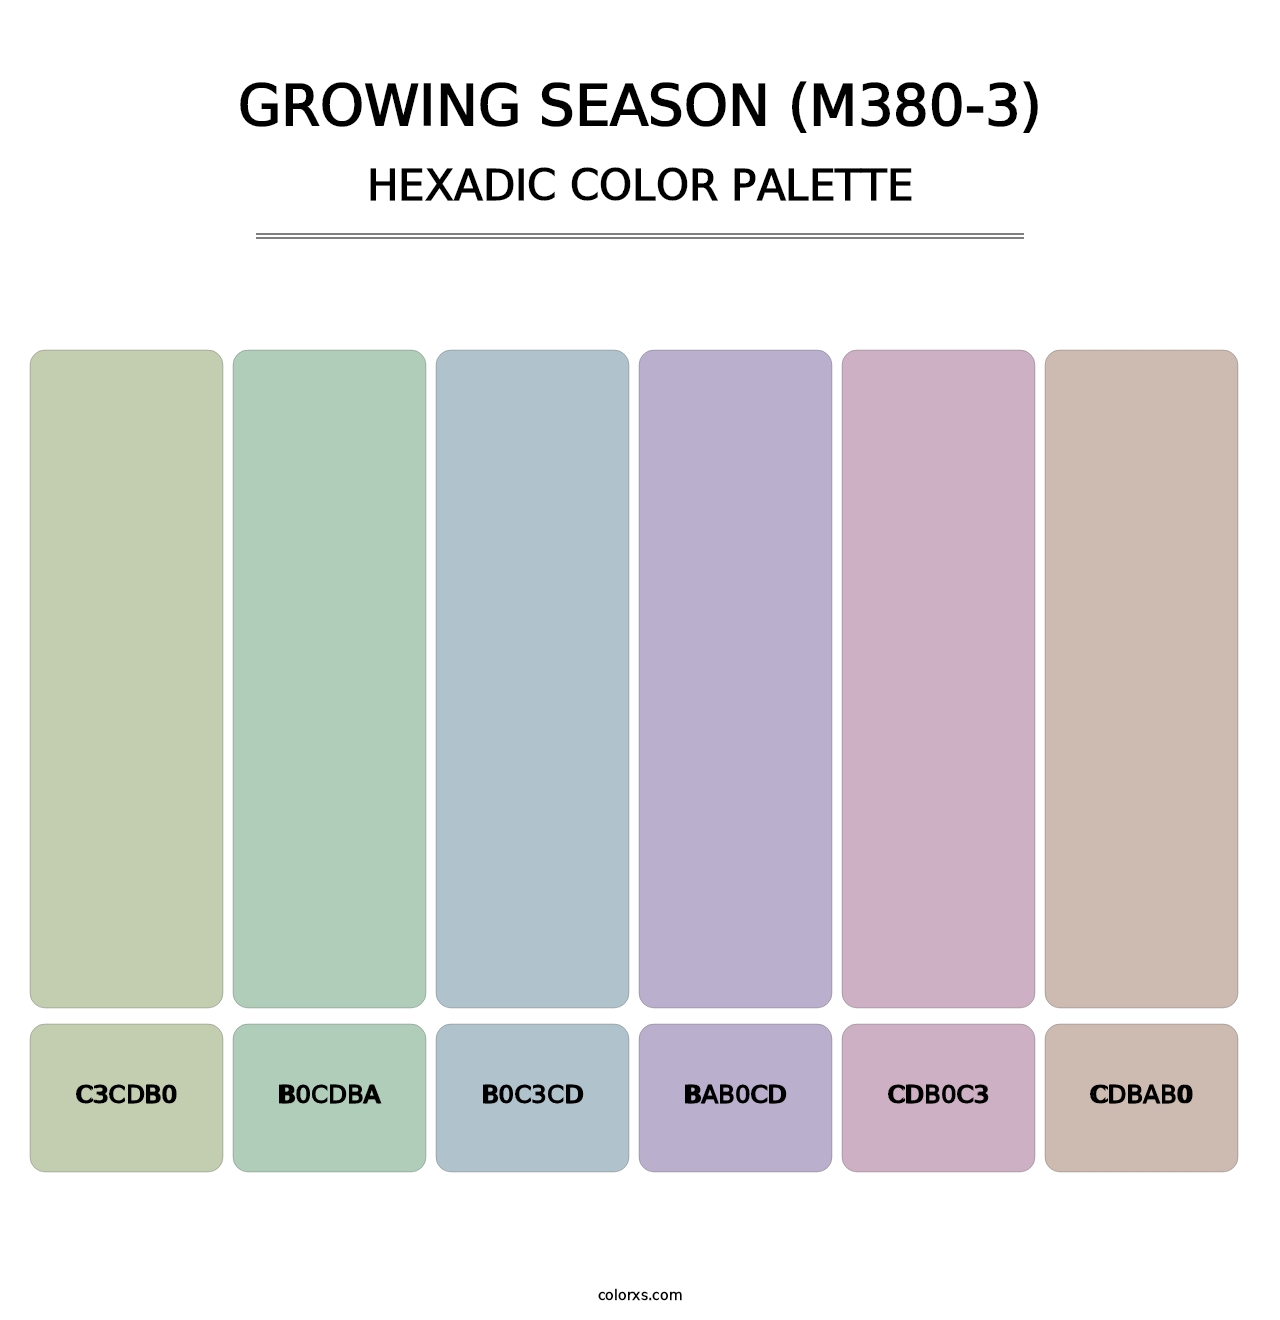 Growing Season (M380-3) - Hexadic Color Palette